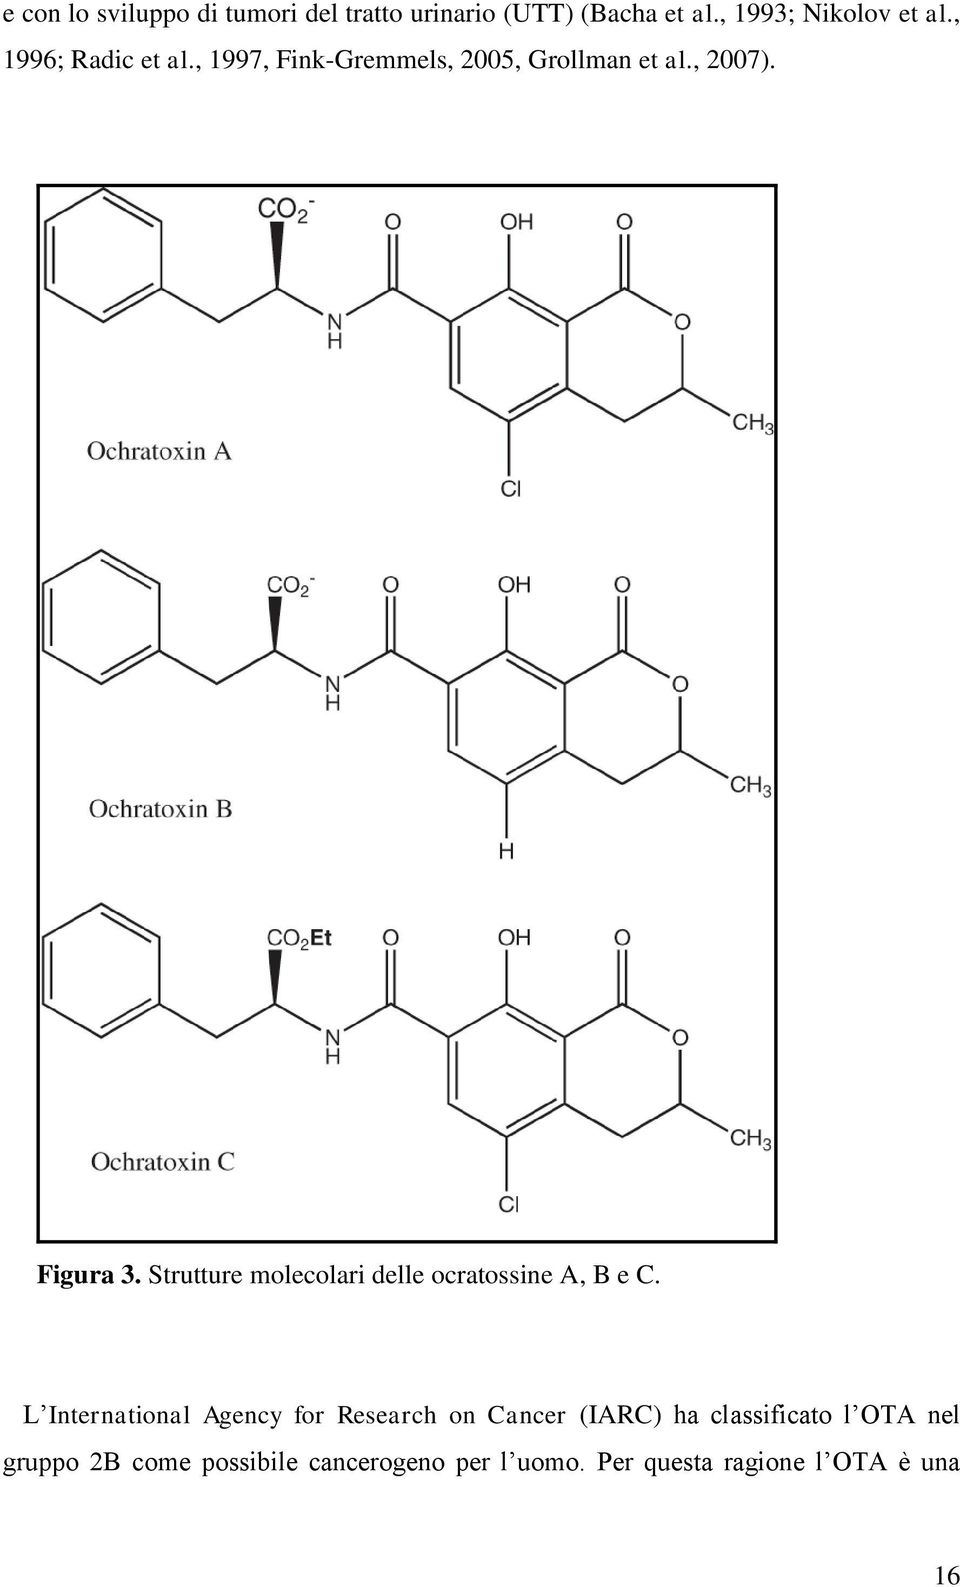 Strutture molecolari delle ocratossine A, B e C.